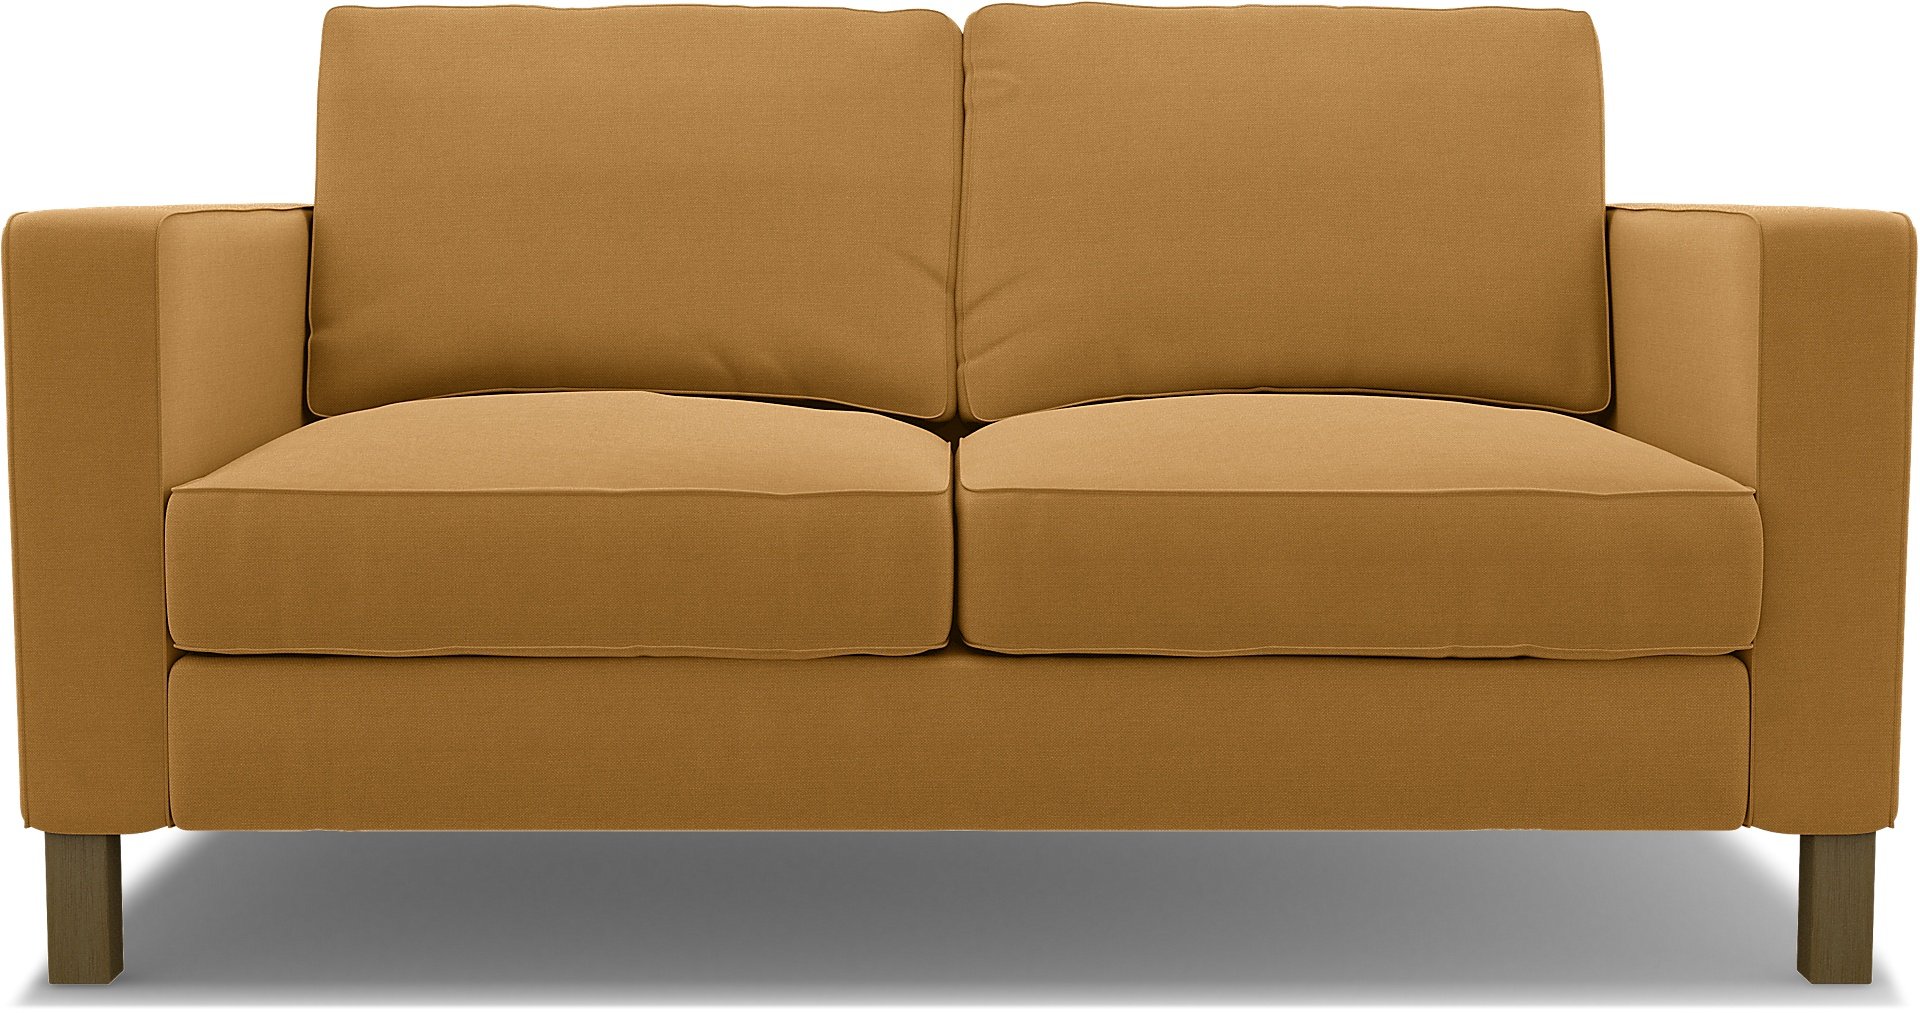 IKEA - Karlstad 2 Seater Sofa Cover, Mustard, Linen - Bemz